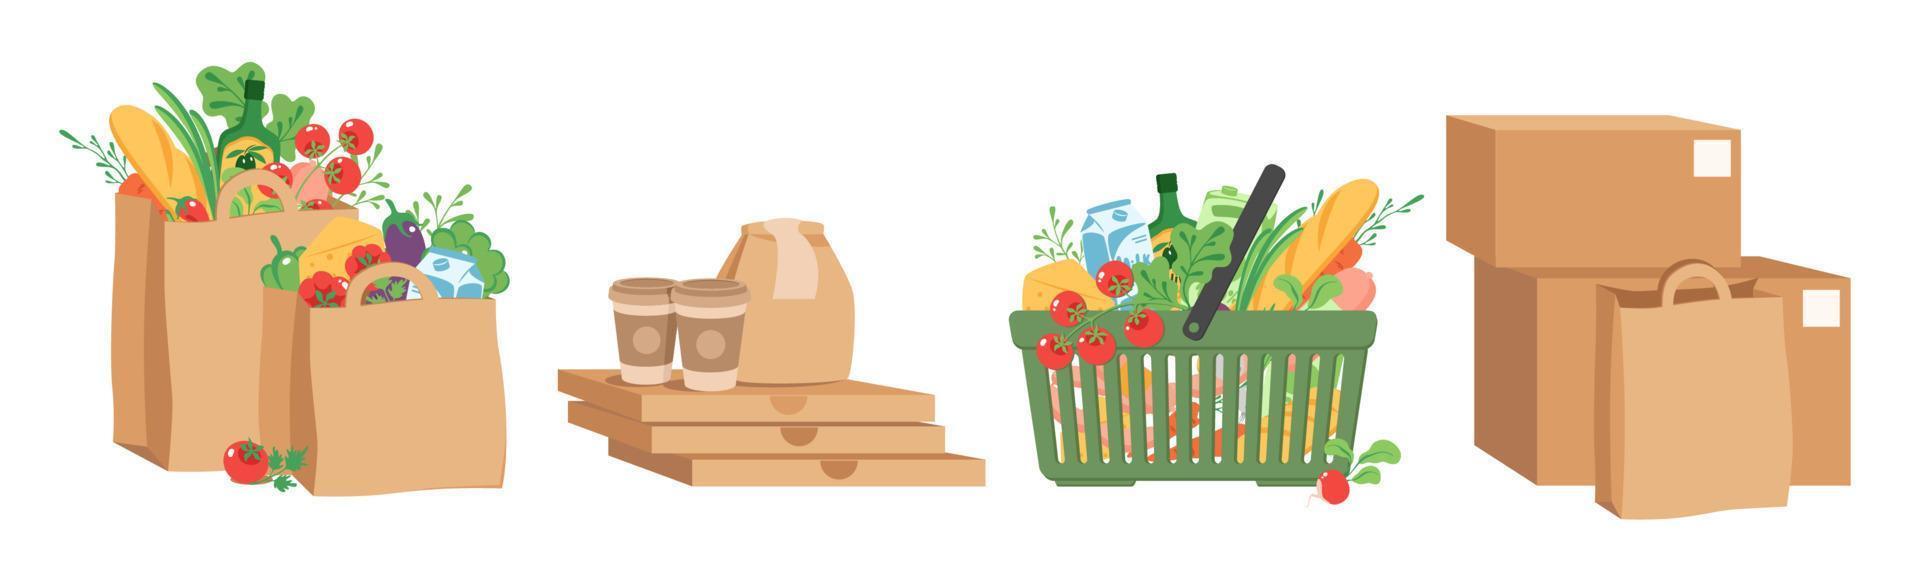 conjunto de compras de comestibles, bolsas de papel con productos, canasta de alimentos, comida rápida, cajas de cartón. ilustración vectorial vector